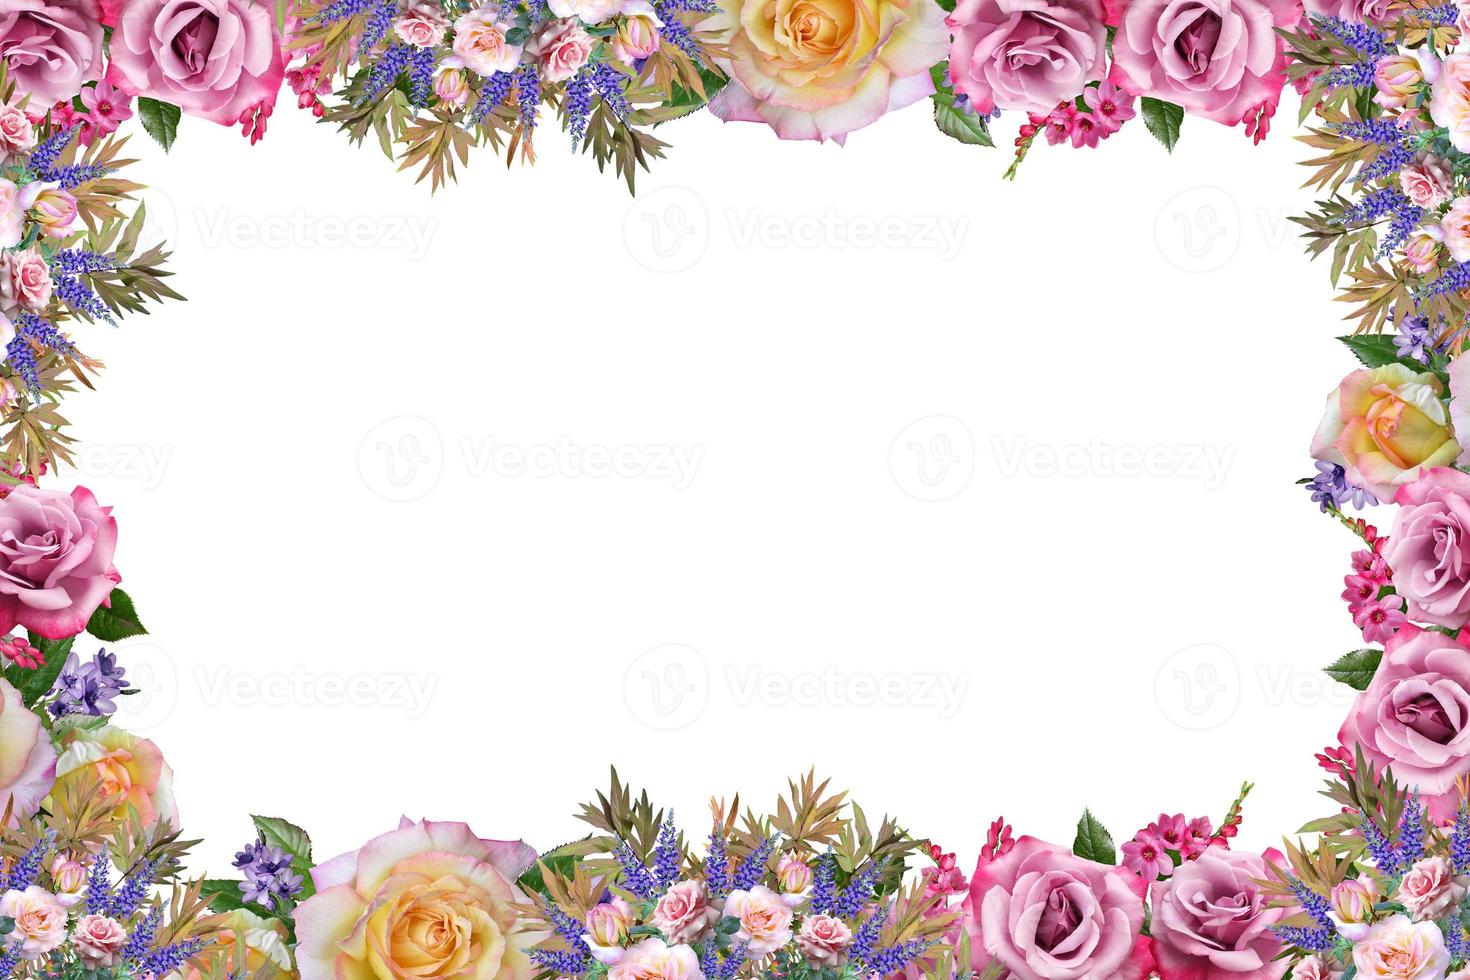 Flower border Frame Background, Flower Background, Floral Frame Background. photo